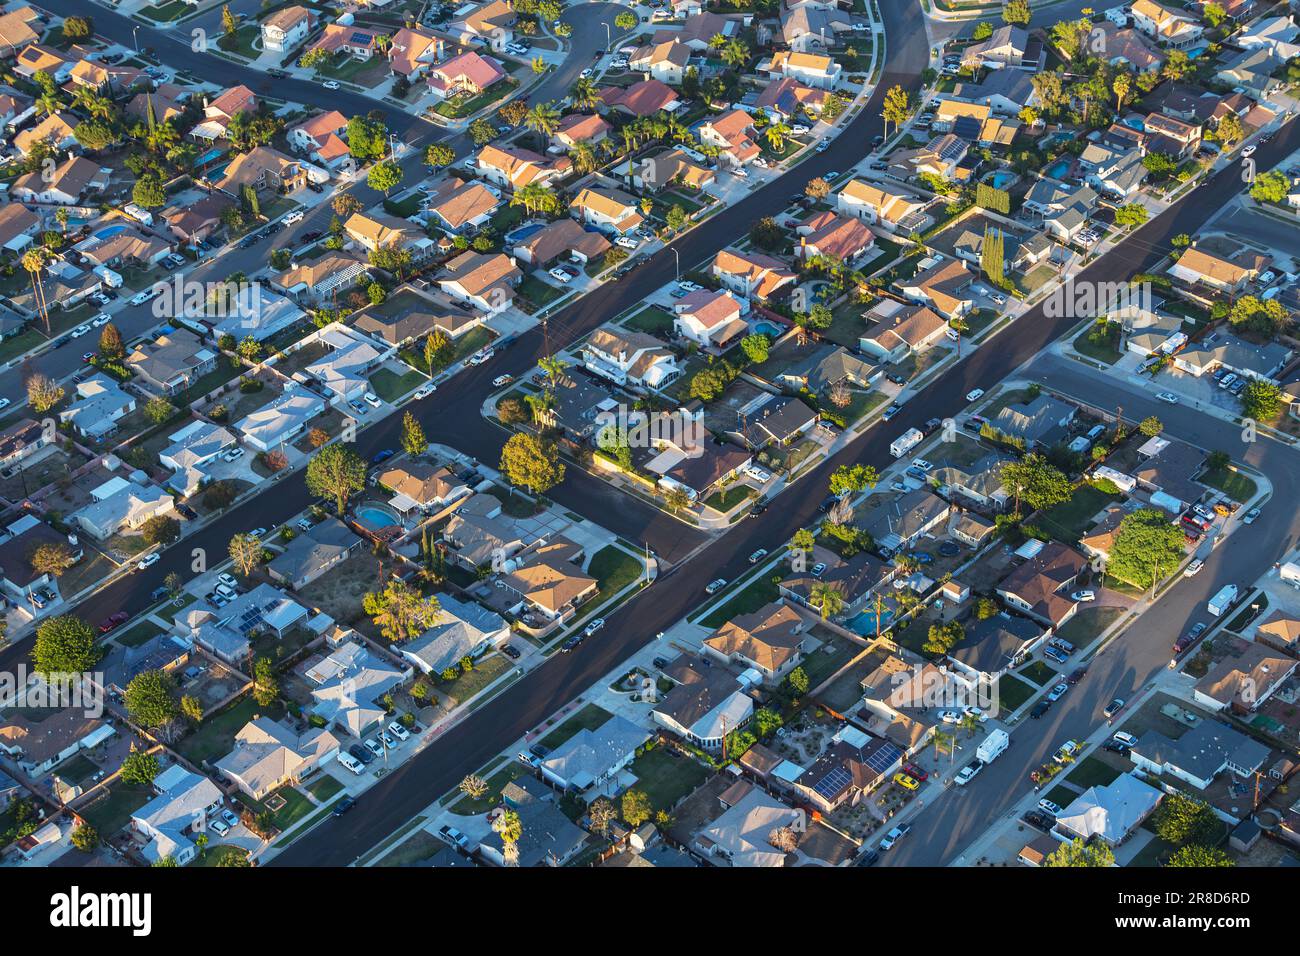 Am späten Nachmittag bietet sich ein unvergleichlicher Blick auf die vorstädtischen Straßen und Häuser in der Nähe von Los Angeles in Simi Valley, Kalifornien. Stockfoto